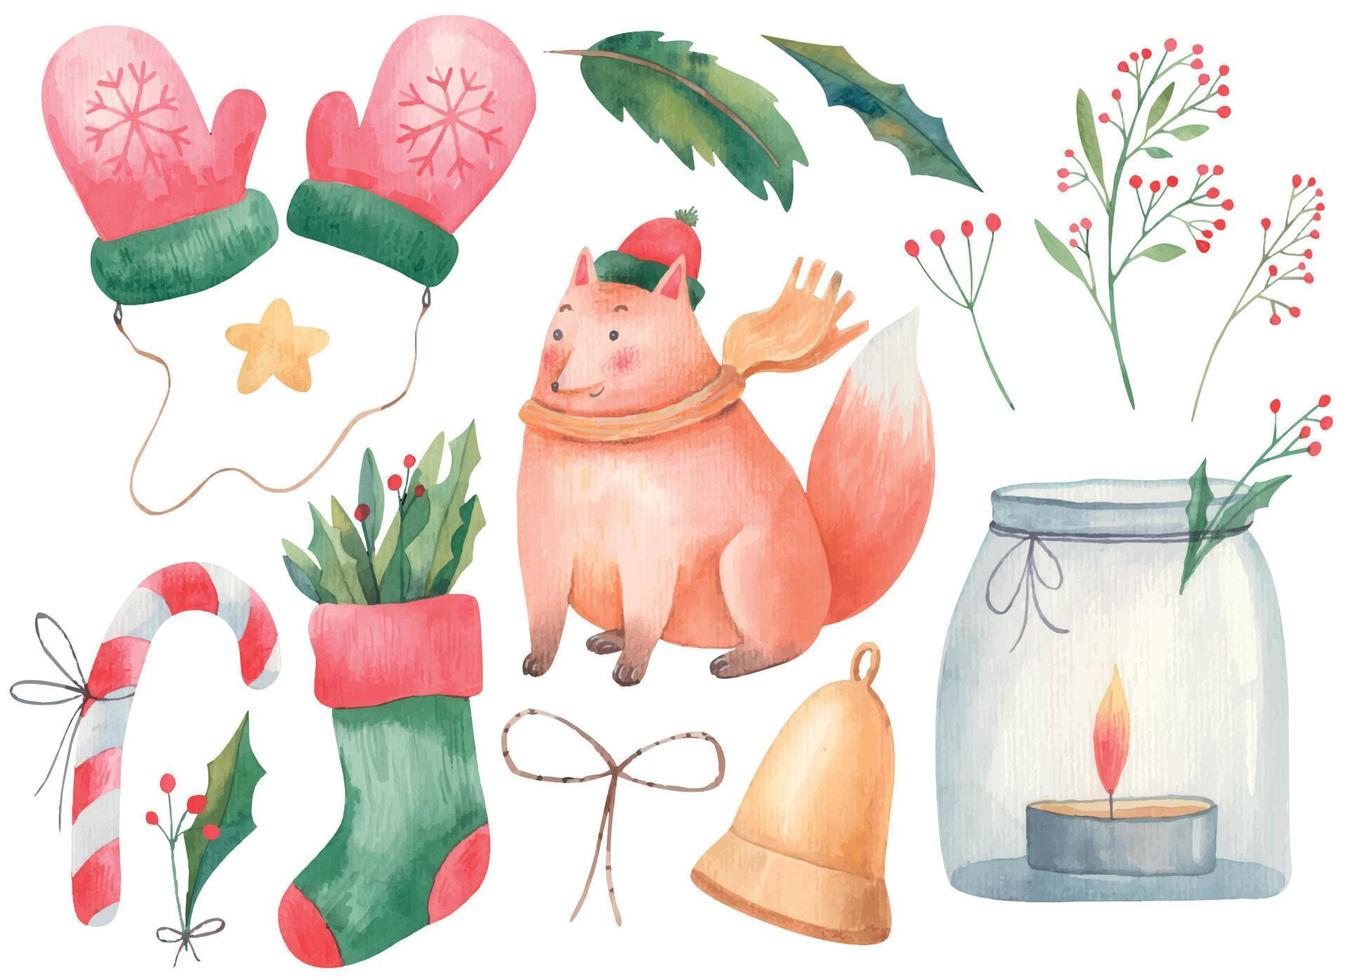 jul uppsättning barns vattenfärg illustration med räv, handskar, vantar, jul strumpa, klubba, ljus i en burk, ljusstake och kvistar.eps vektor